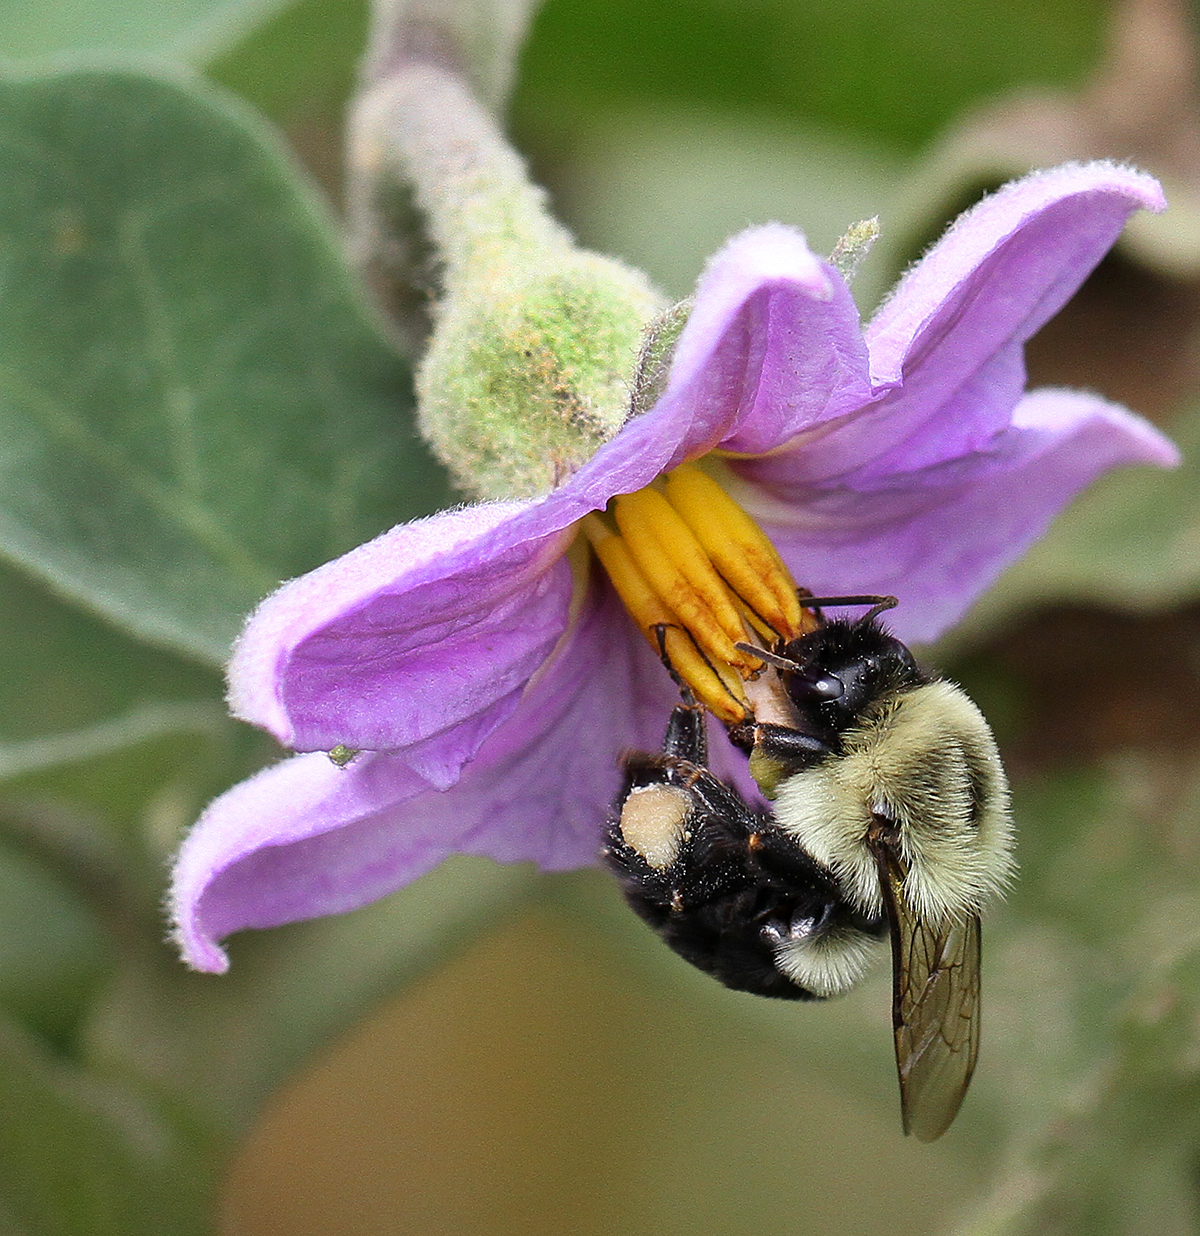 Bumble bee on eggplant bloom